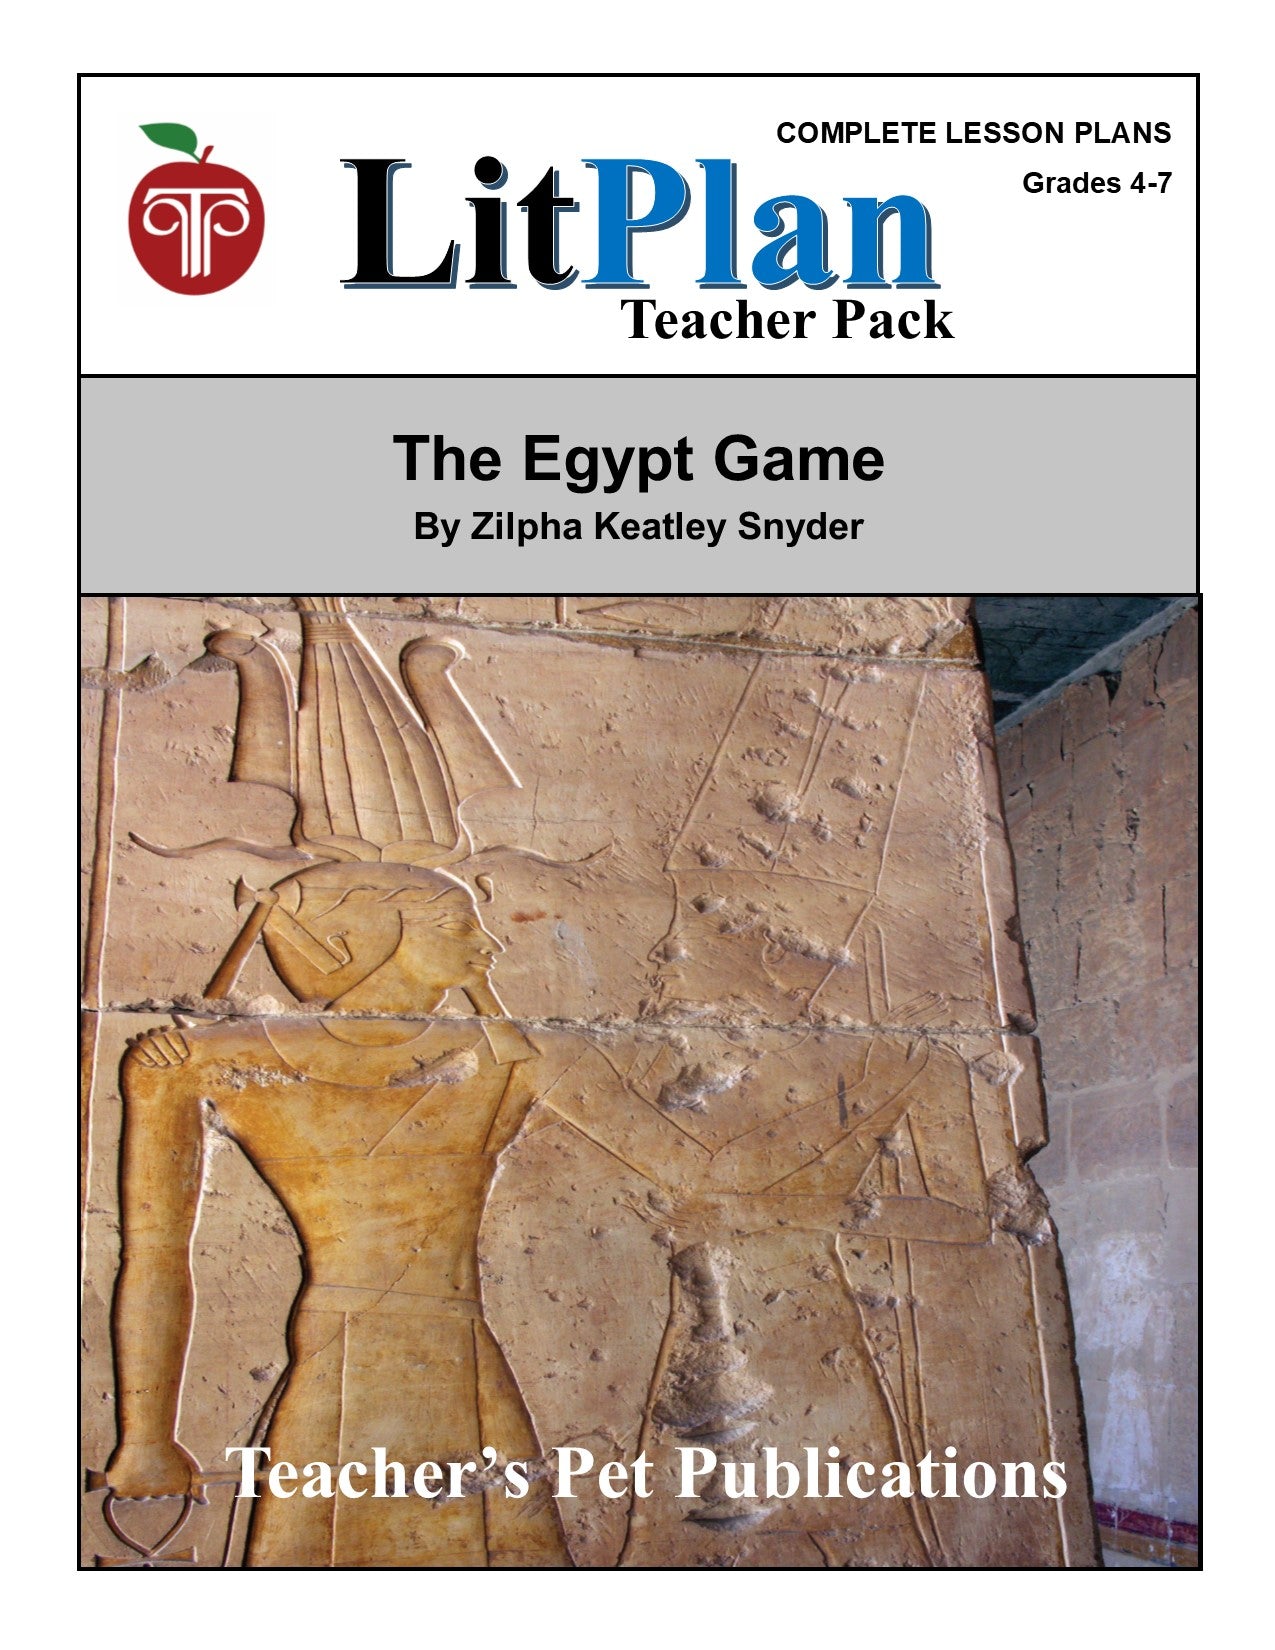 The Egypt Game: LitPlan Teacher Pack Grades 4-7